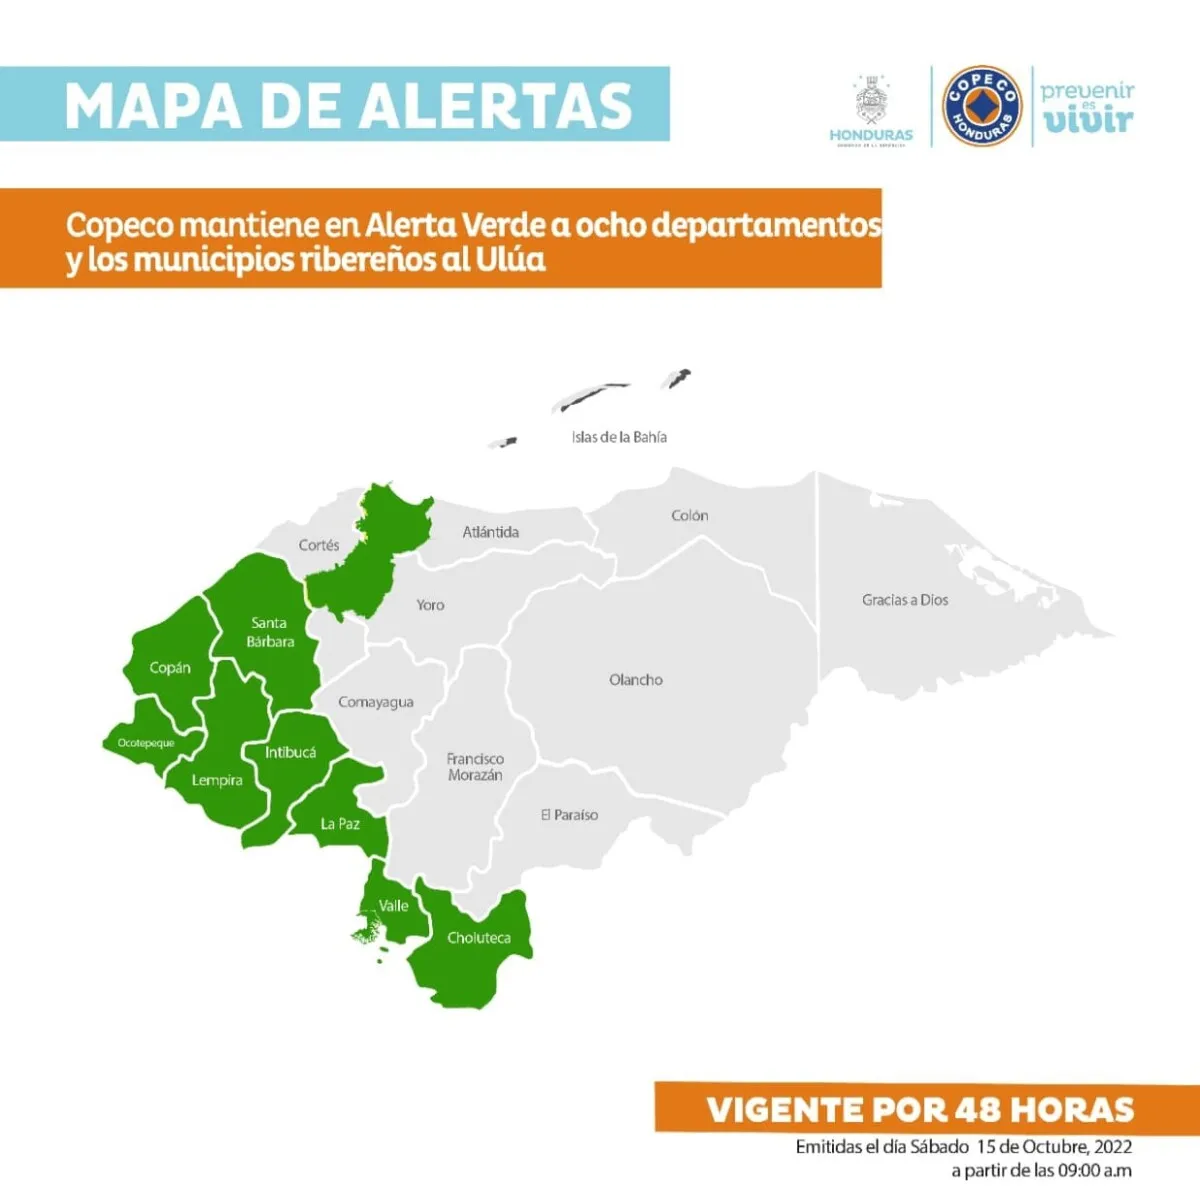 Copeco mantiene en Alerta Verde a ocho departamentos y los municipios ribereños al Ulúa